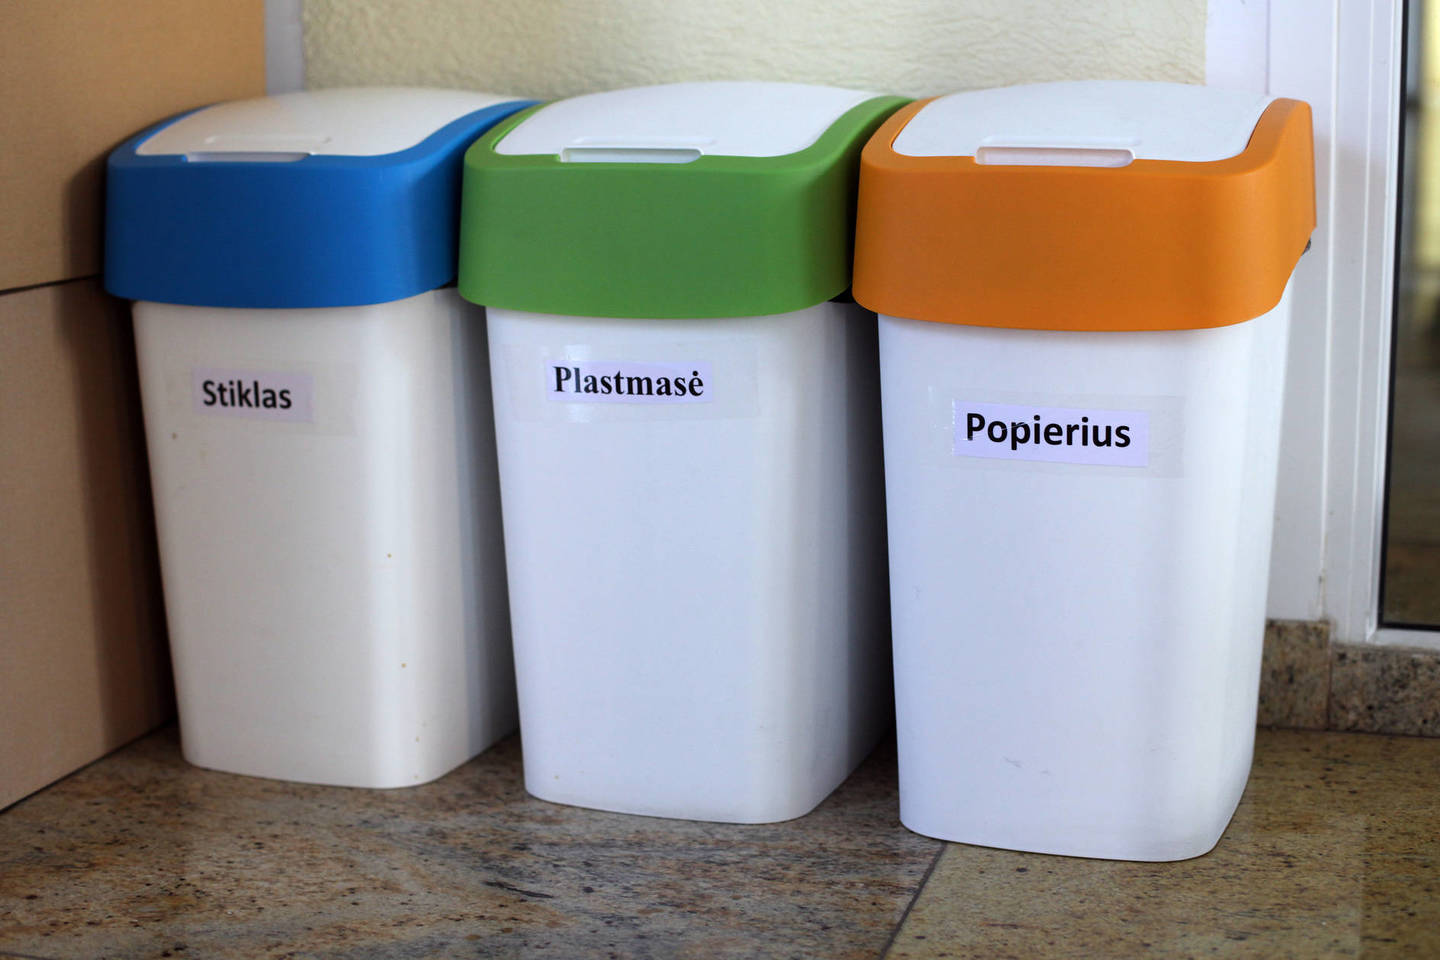 Ekomiestelyje buvo daug dėmesio skiriama ir atliekų rūšiavimo svarbai: pristatyti rūšiavimo konteineriai, papasakota, kokioms atliekoms jie skirti<br>V.Balkūno nuotr.